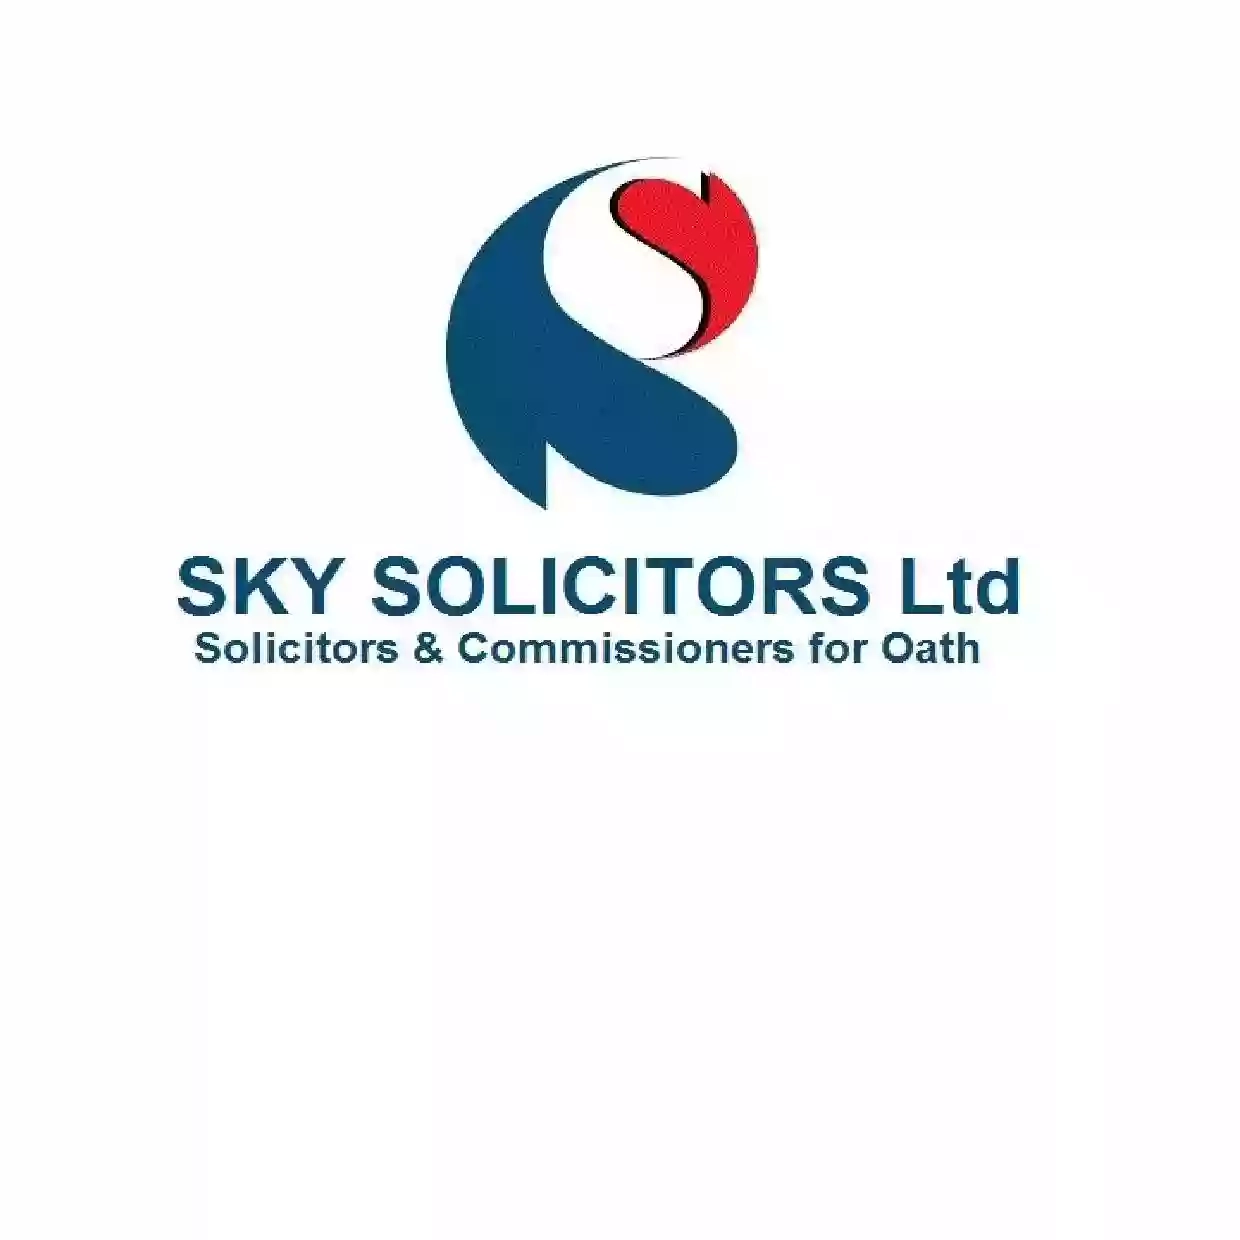 Sky Solicitors Ltd